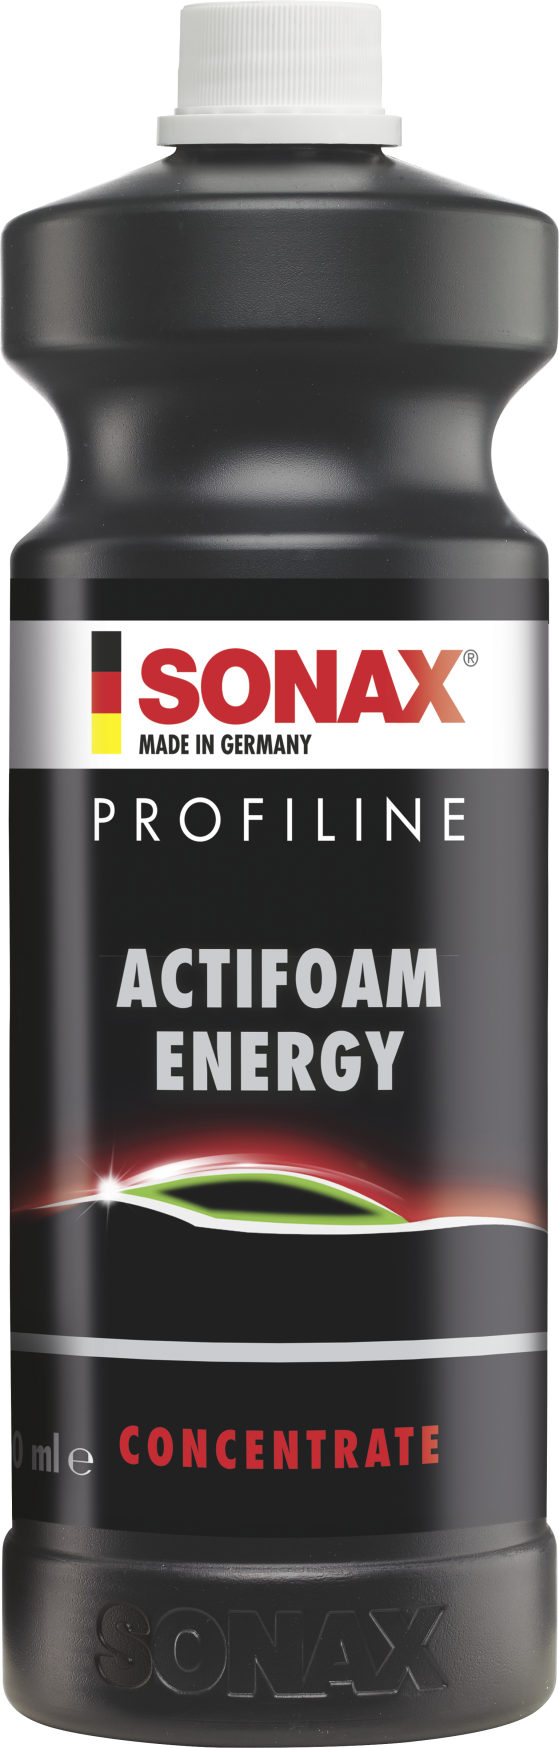 SONAX Profiline Actifoam Energy 1 l